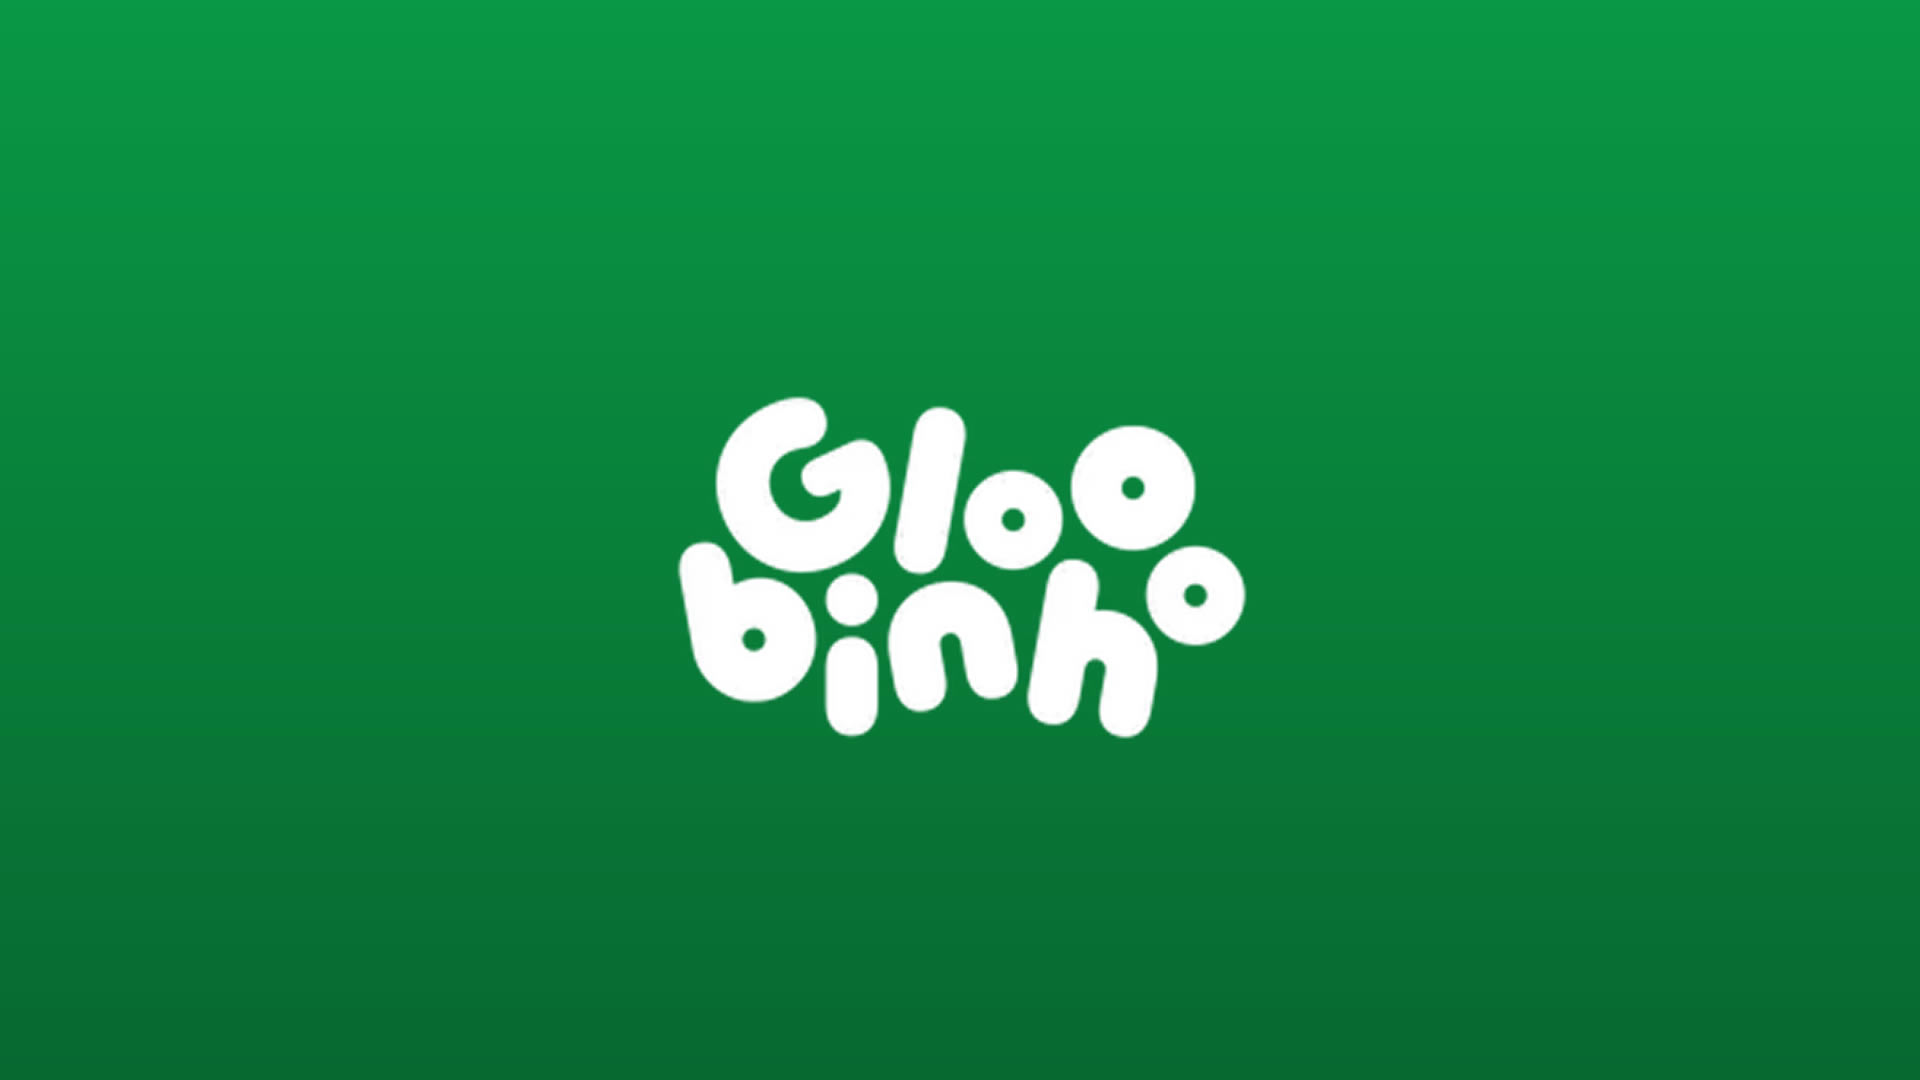 Gloobinho Online